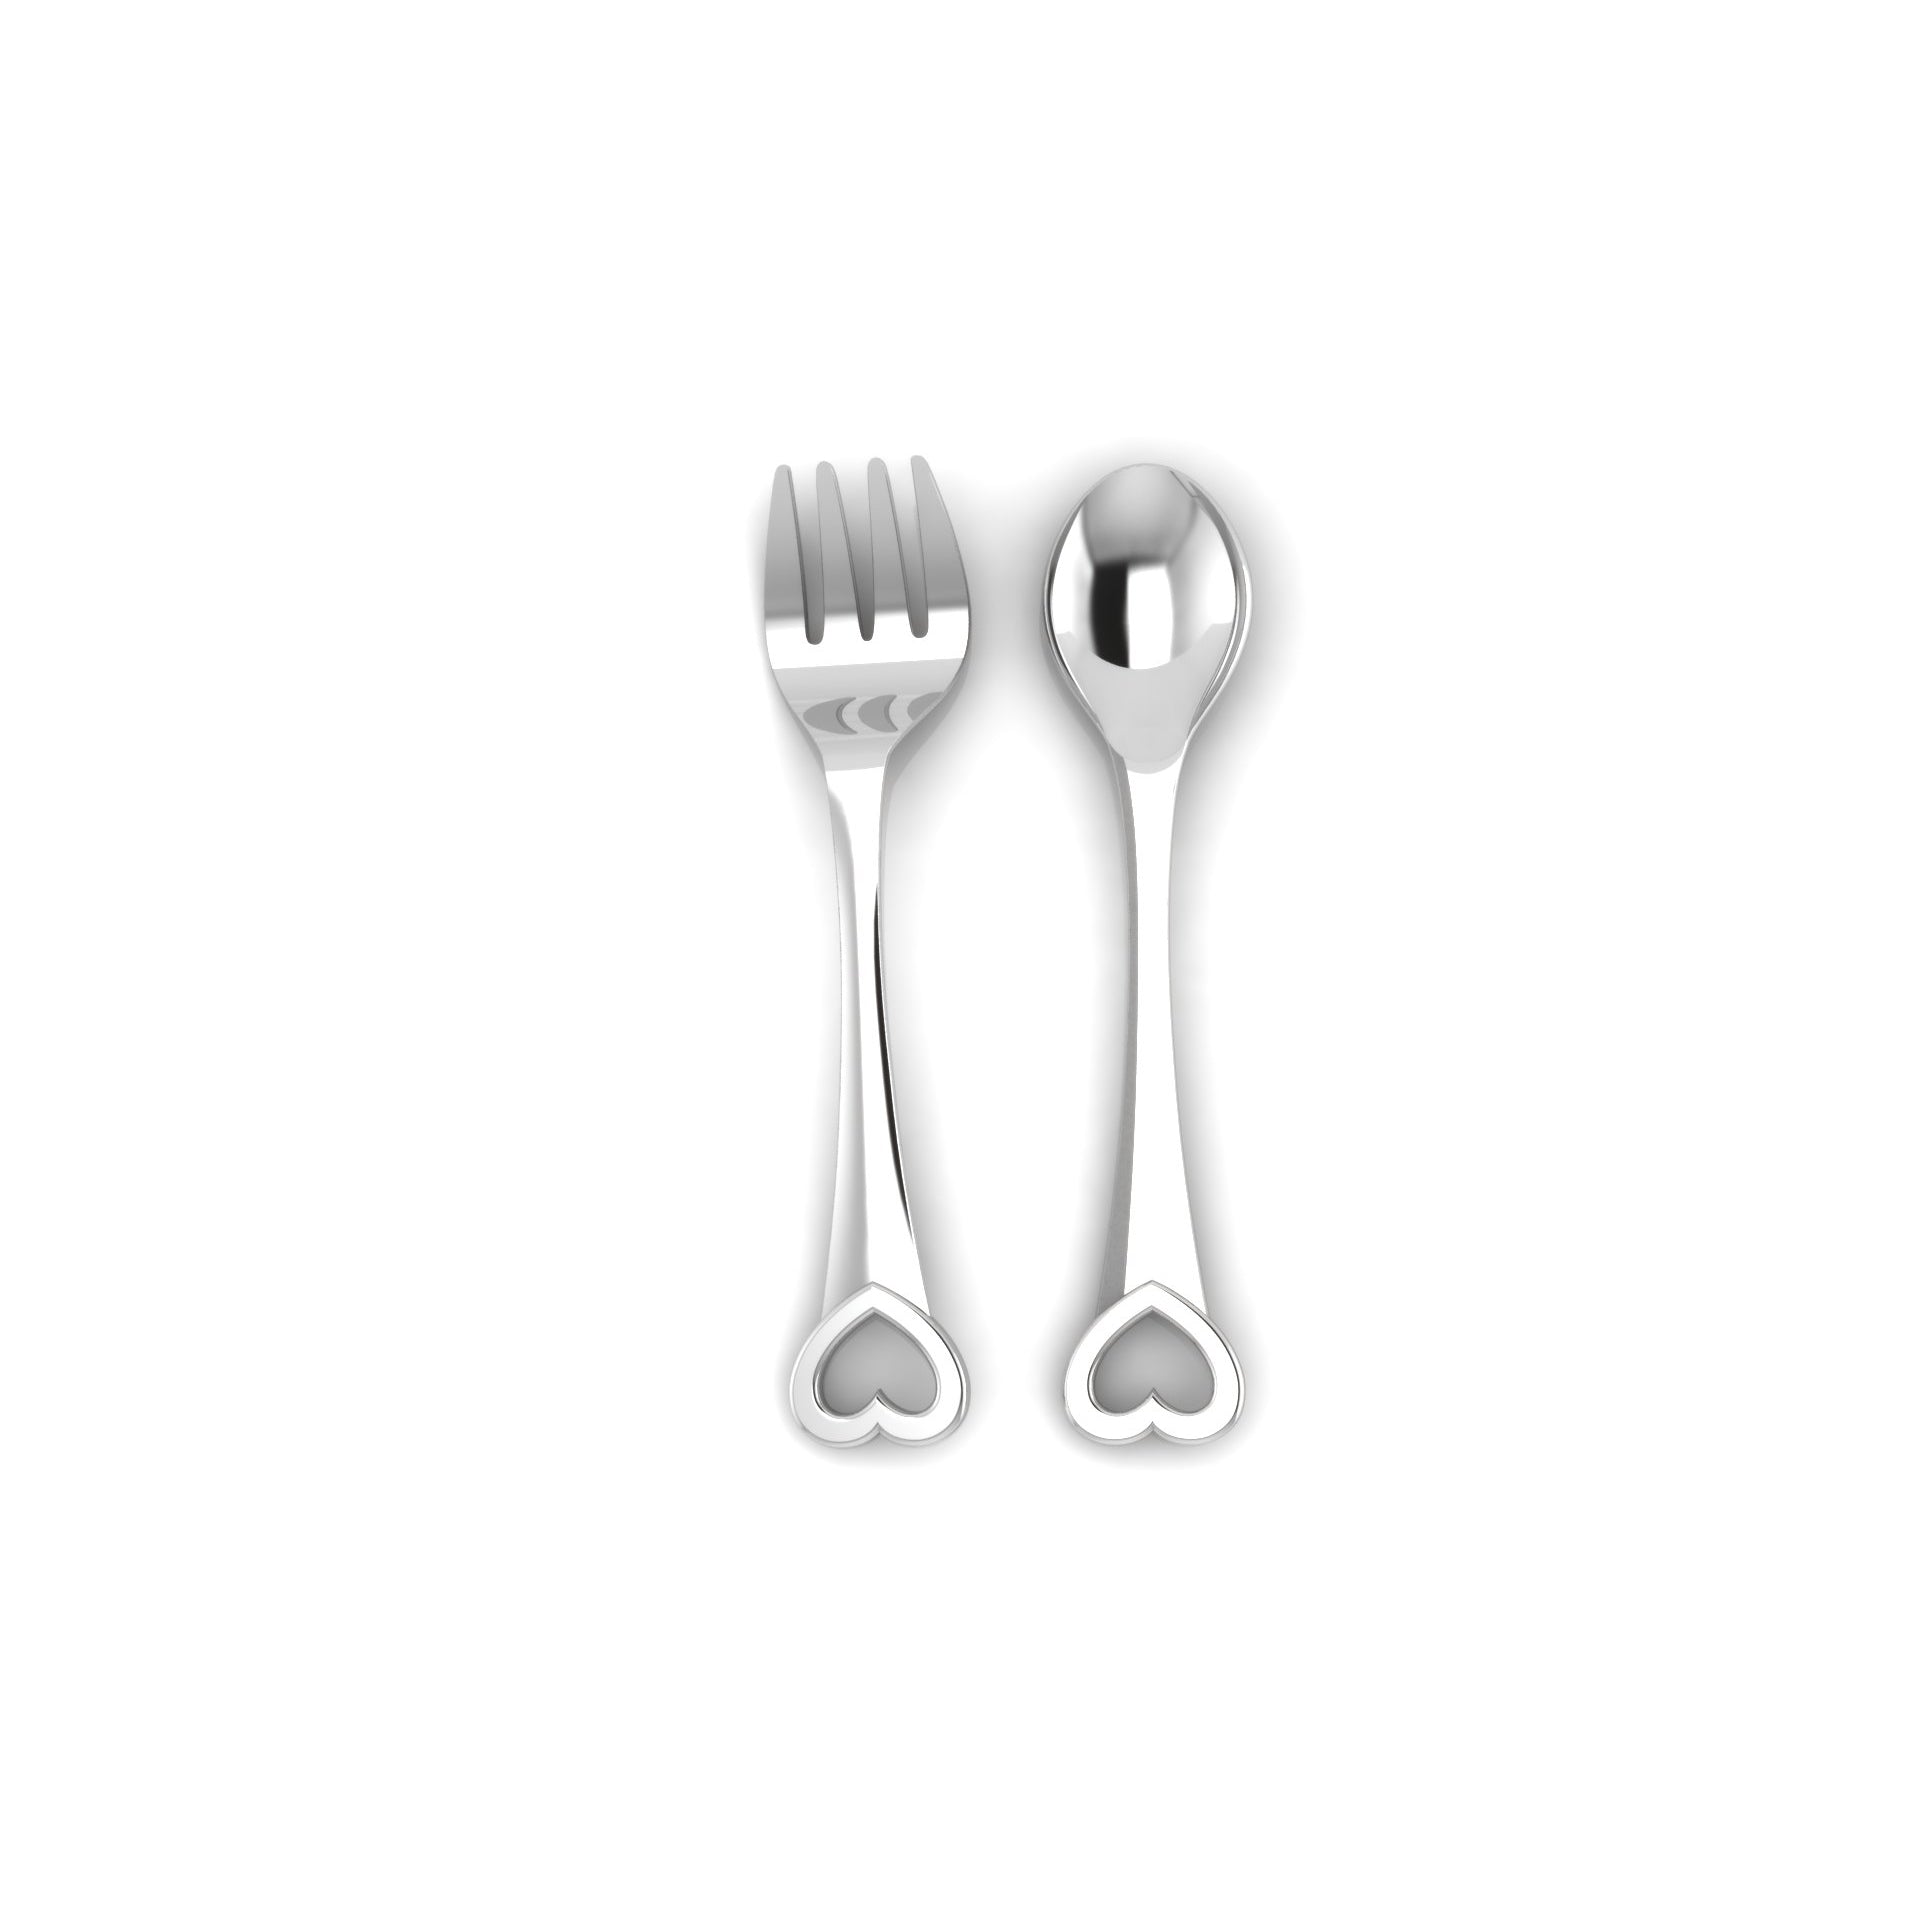 Sterling Silver Feeding Spoon & Fork Set - Heart